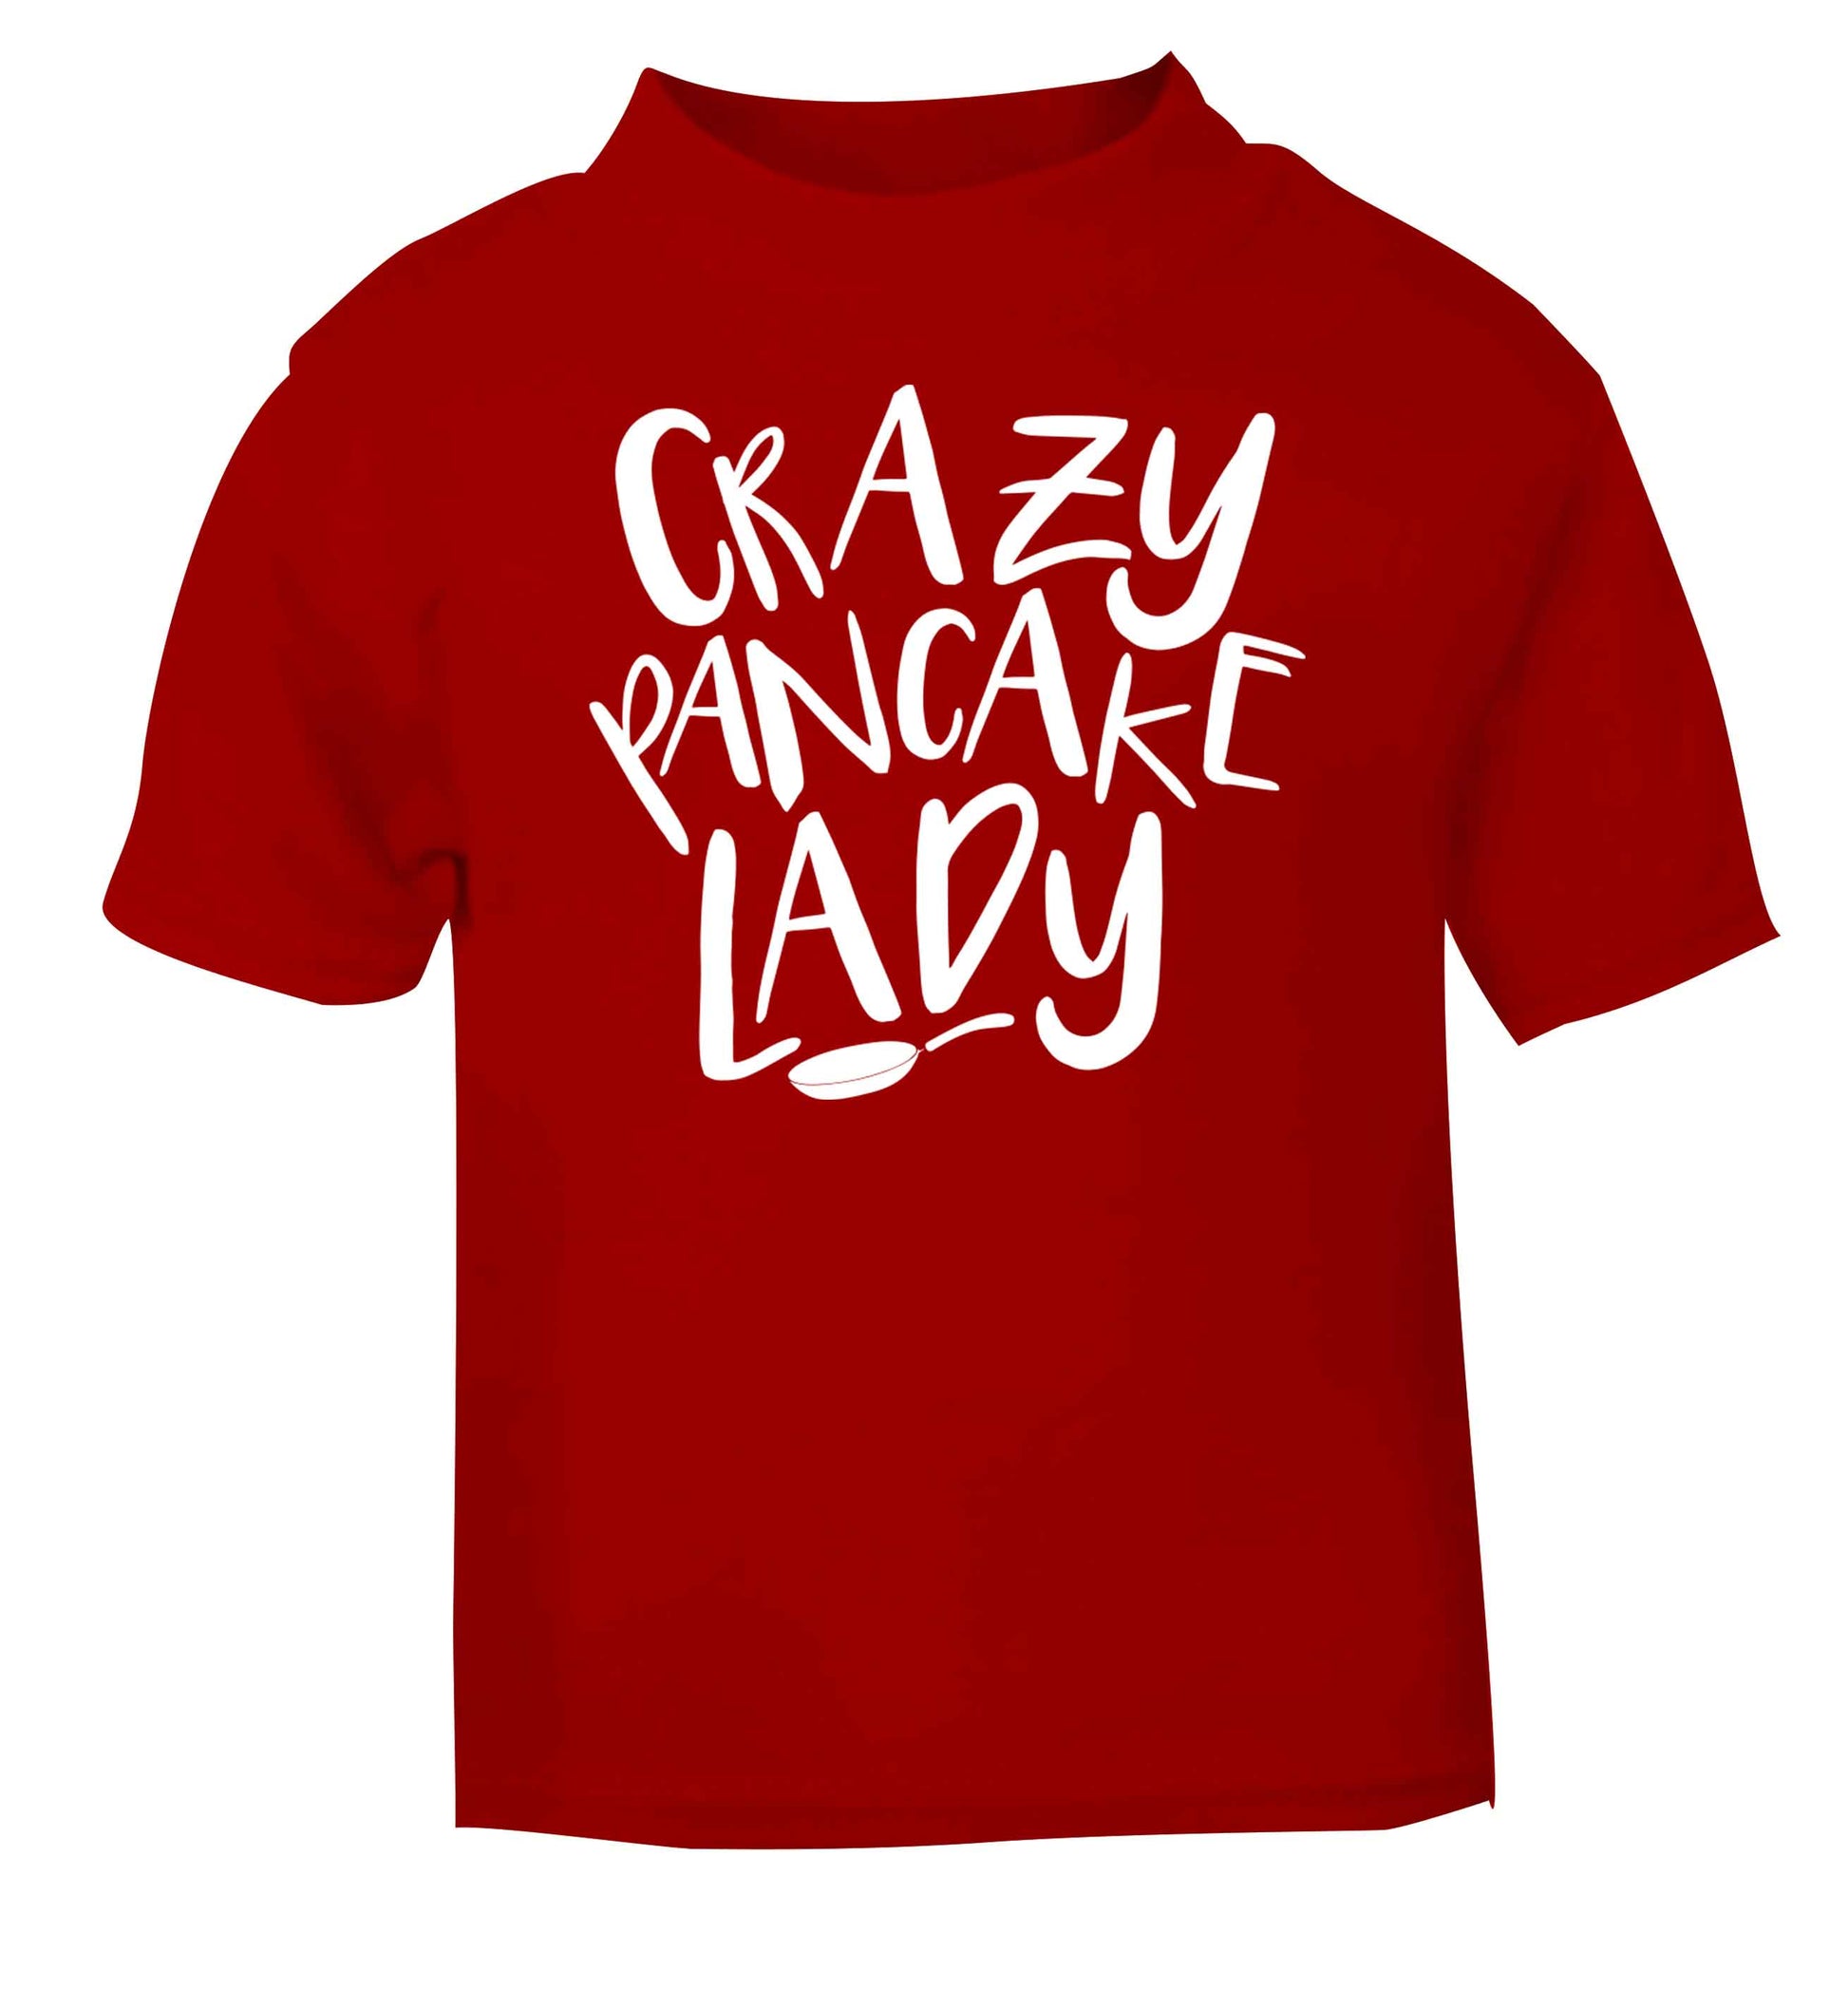 Crazy pancake lady red baby toddler Tshirt 2 Years